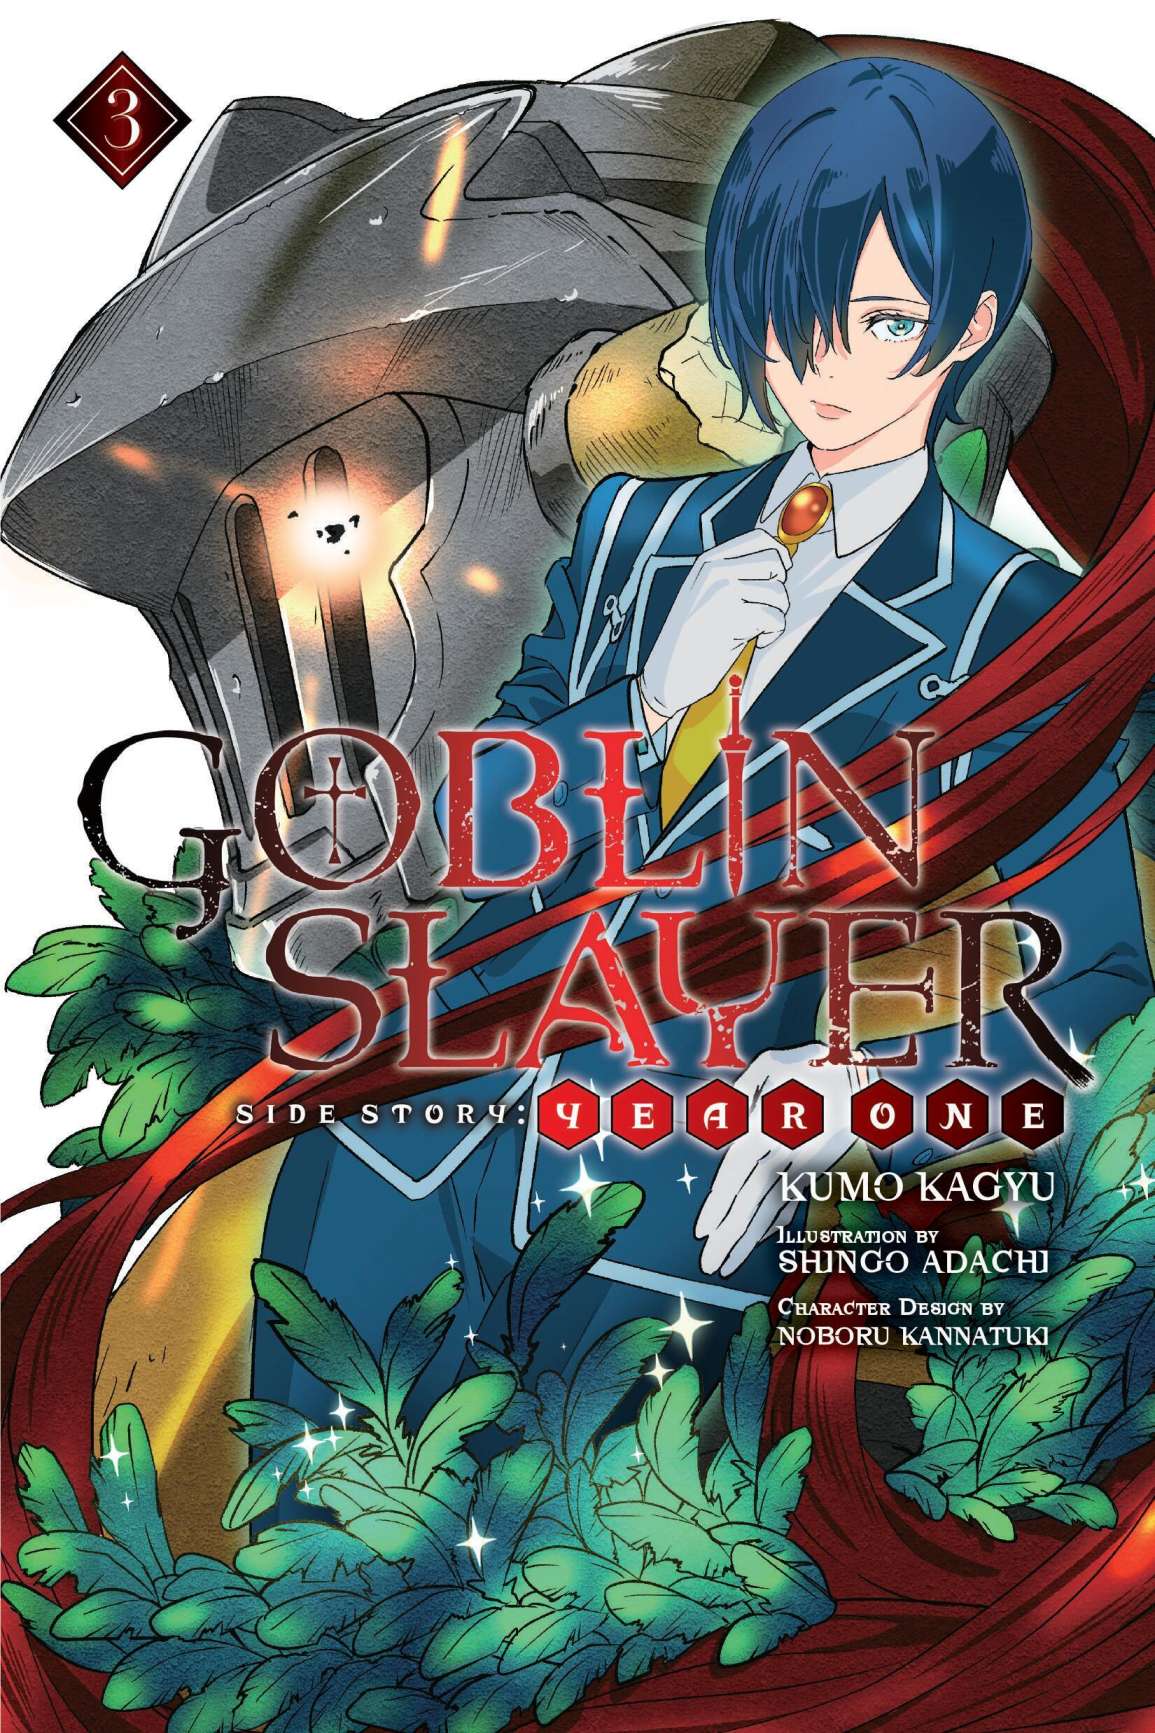 Goblin Slayer Side Story: Year One Vol. 03 (Light Novel)